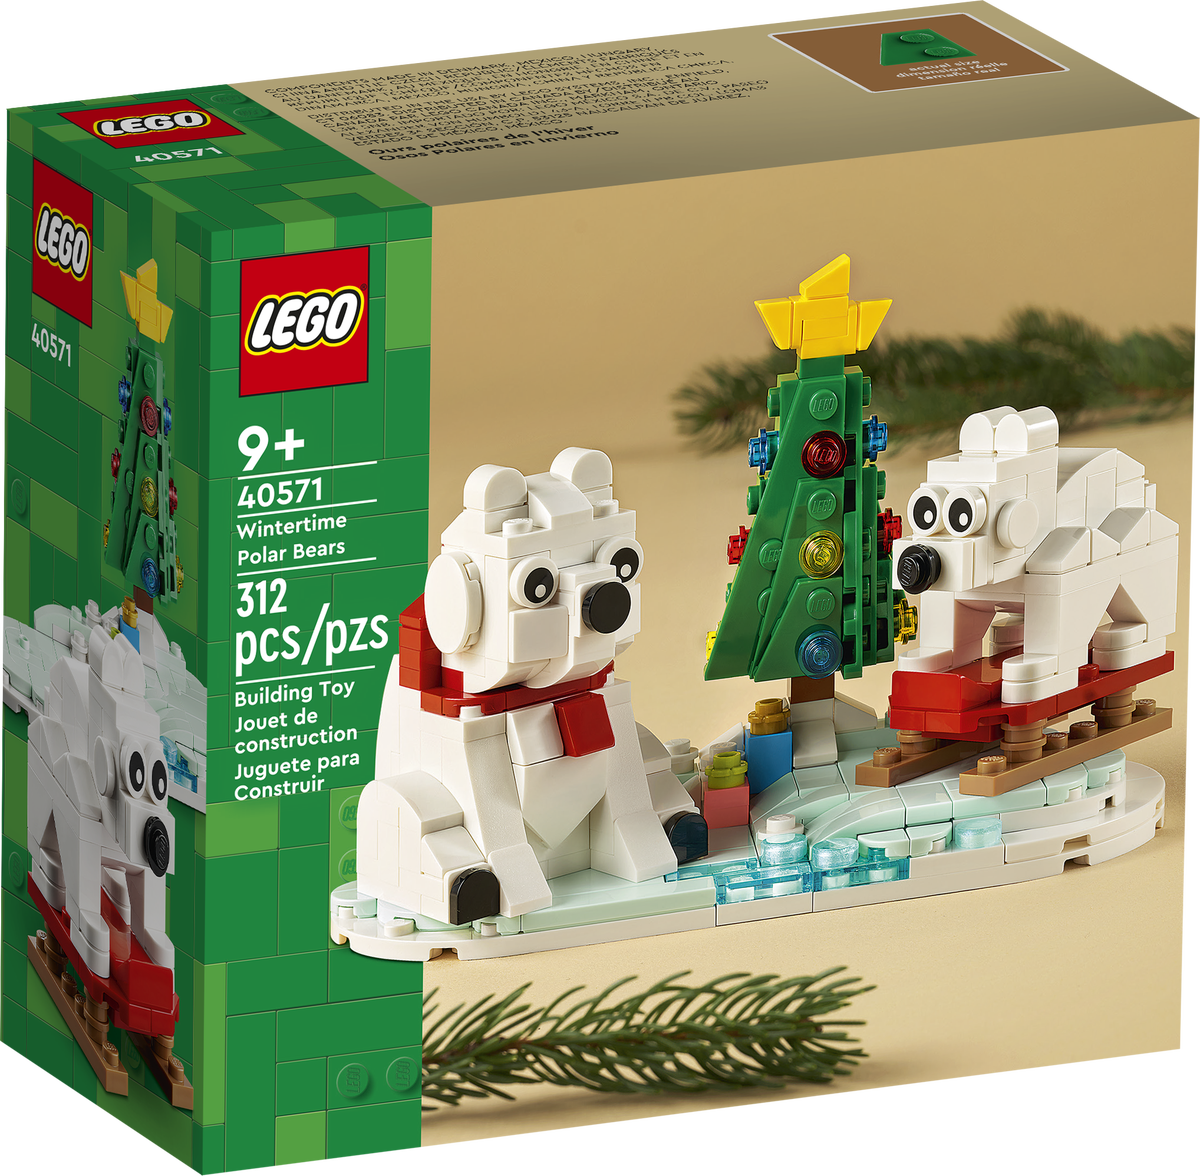 40571: Wintertime Polar Bears